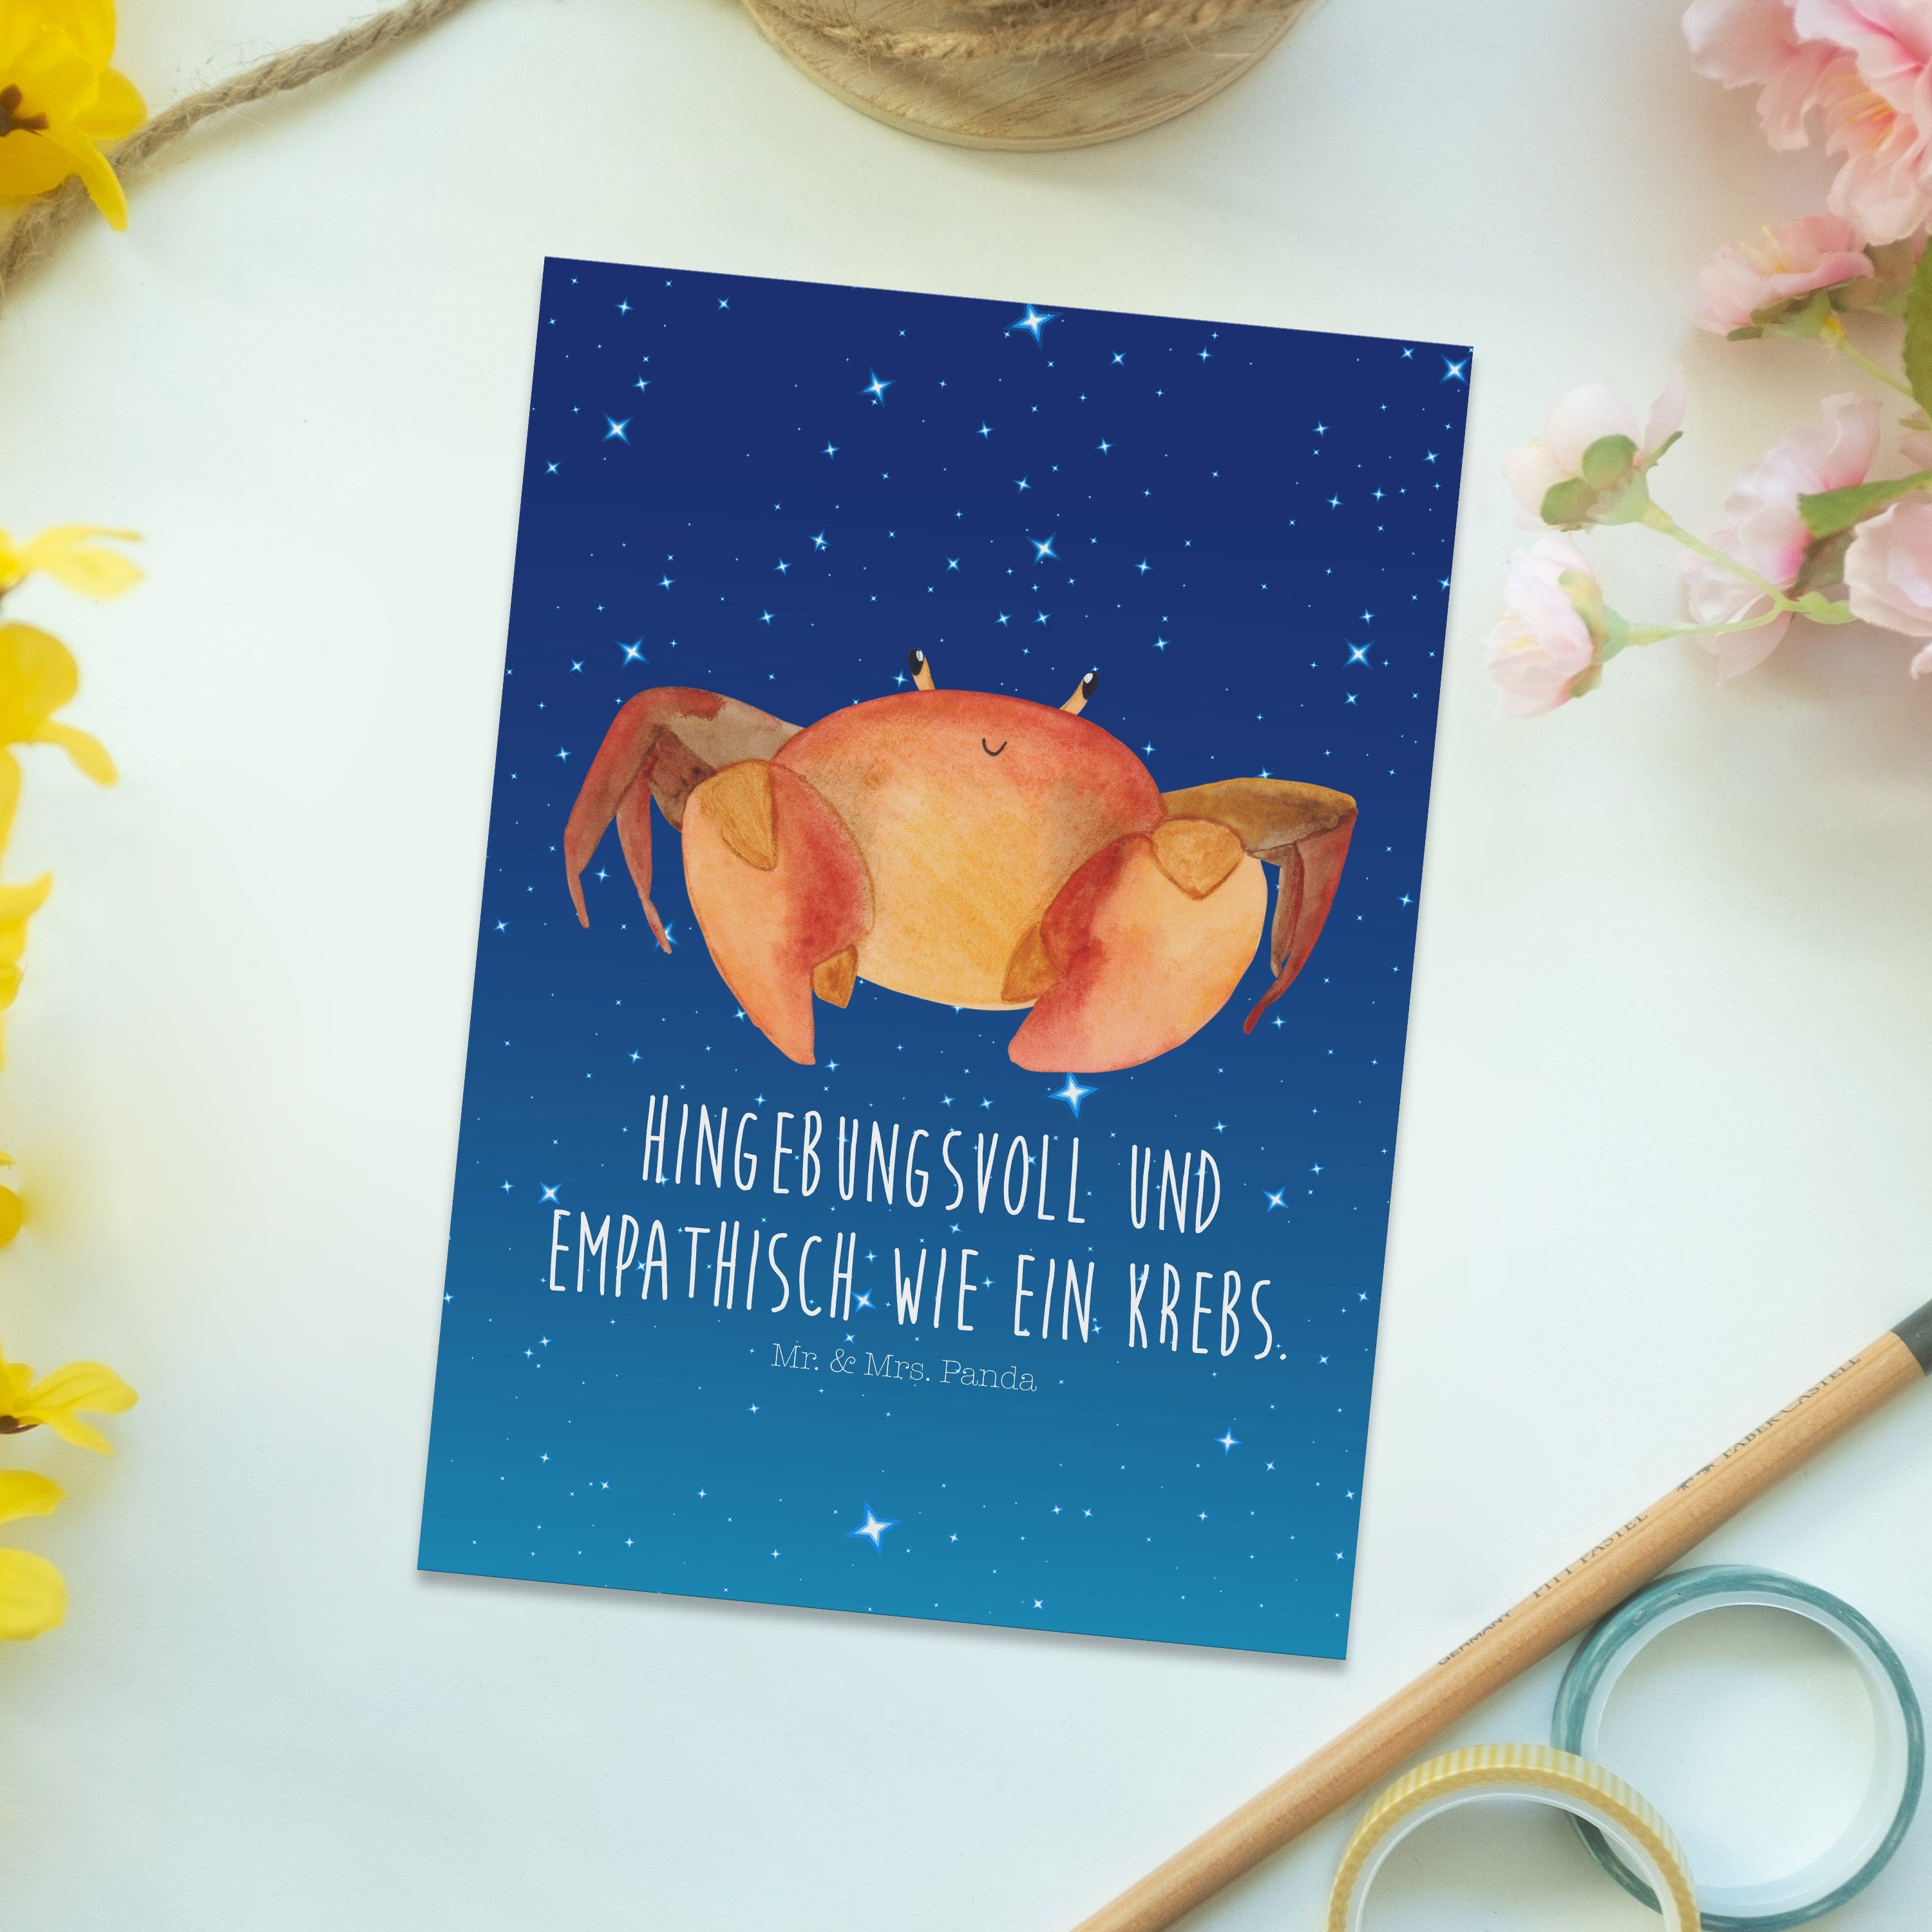 Blau & Horoskop, Mr. Astrolo - Panda Sternzeichen Sternenhimmel - Krebs Geschenk, Mrs. Postkarte